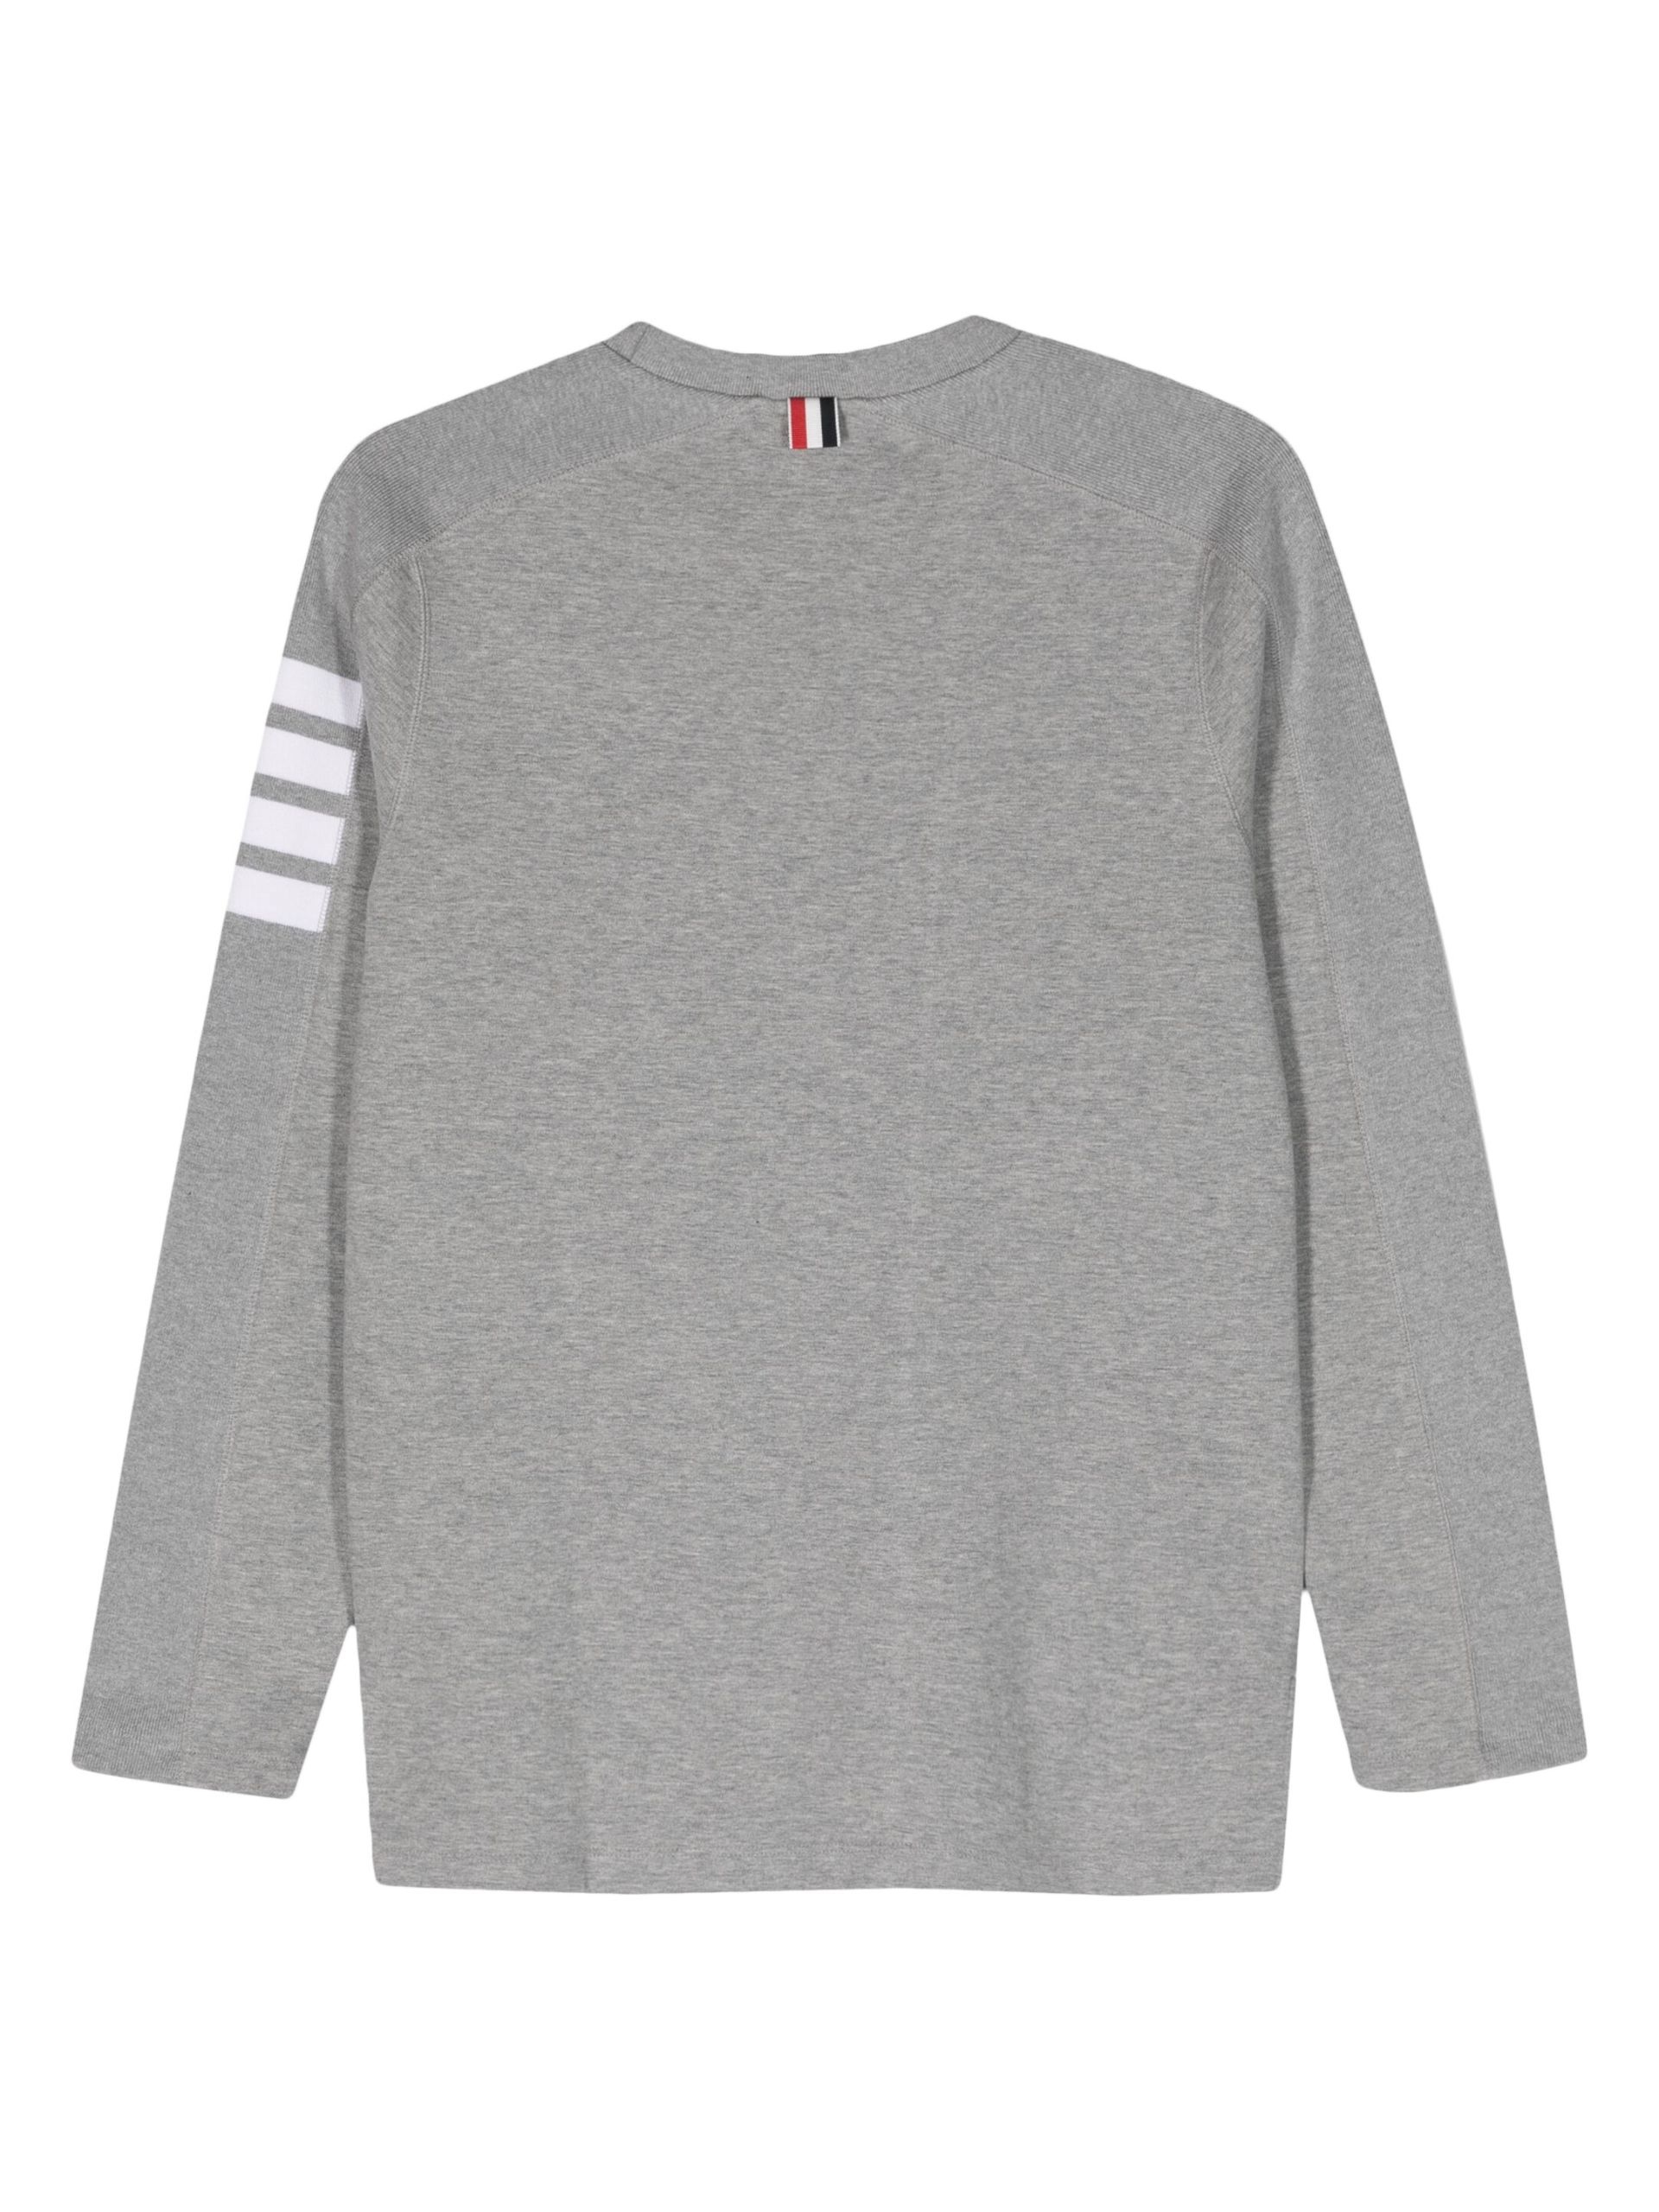 Grey 4-Bar Stripe Sweatshirt - 2